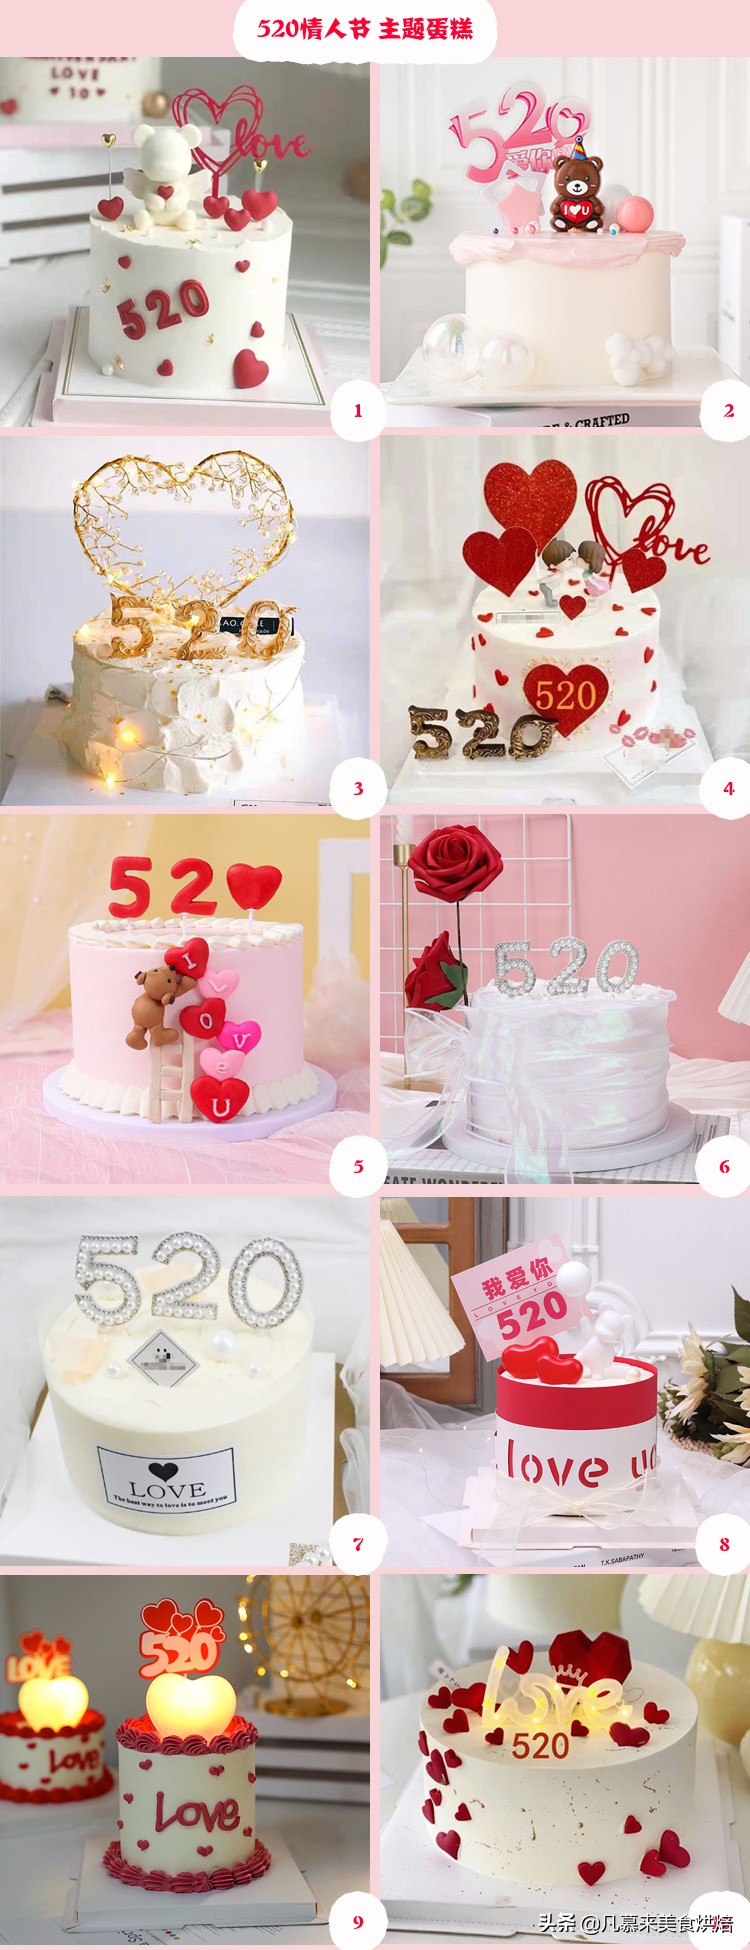 520蛋糕图片「520蛋糕图片 女孩」